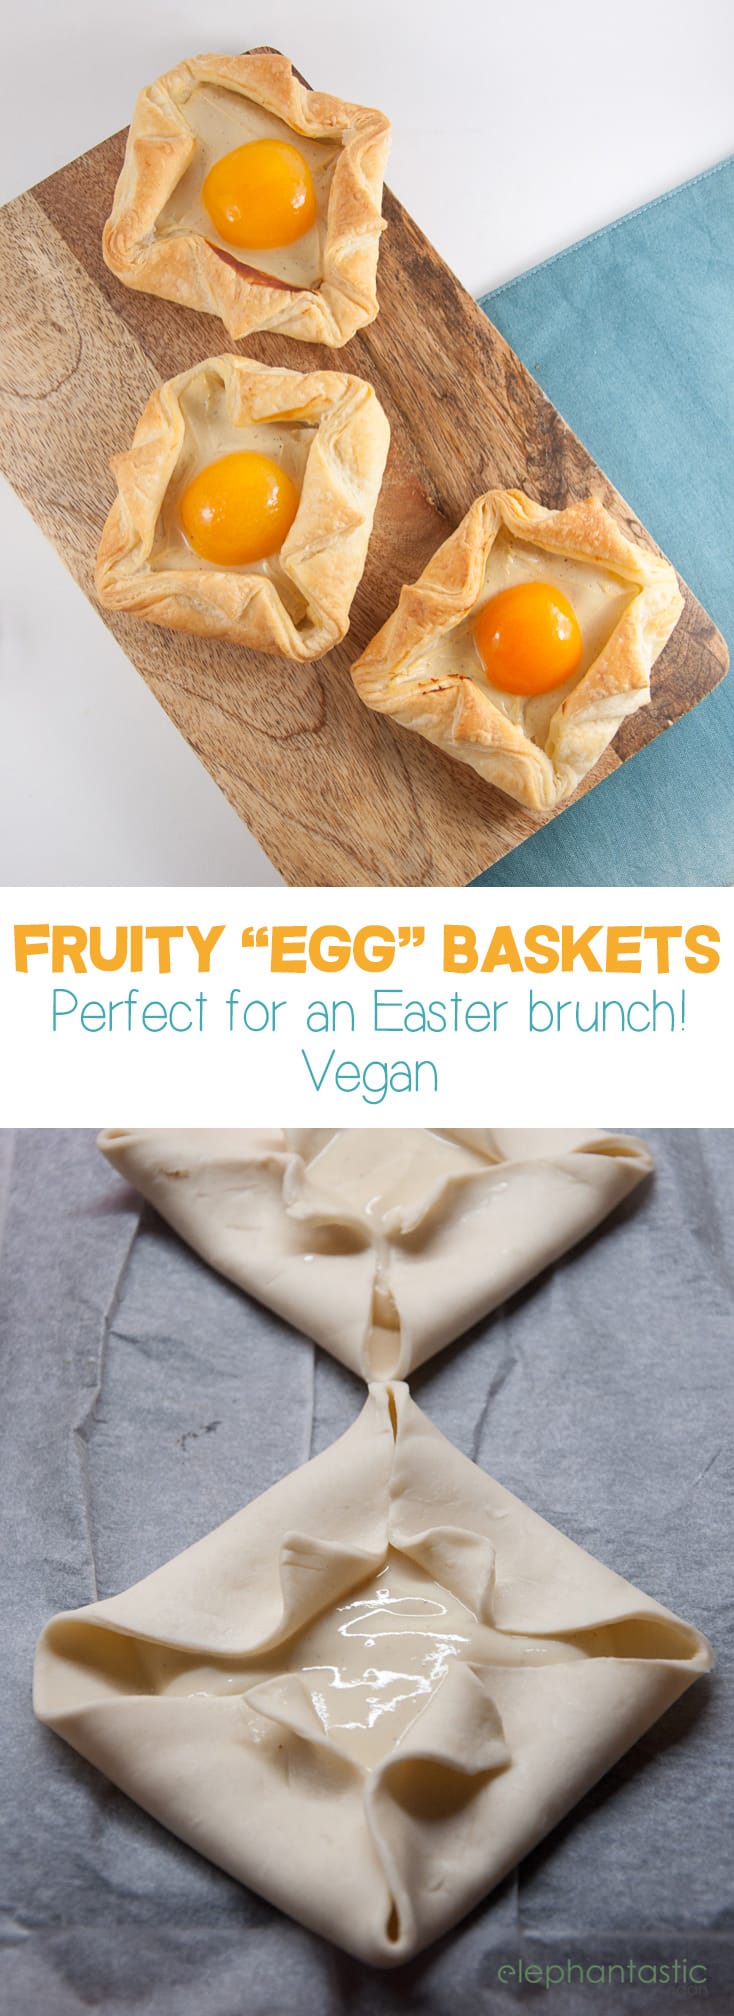 Fruity Egg Baskets vegan | ElephantasticVegan.com